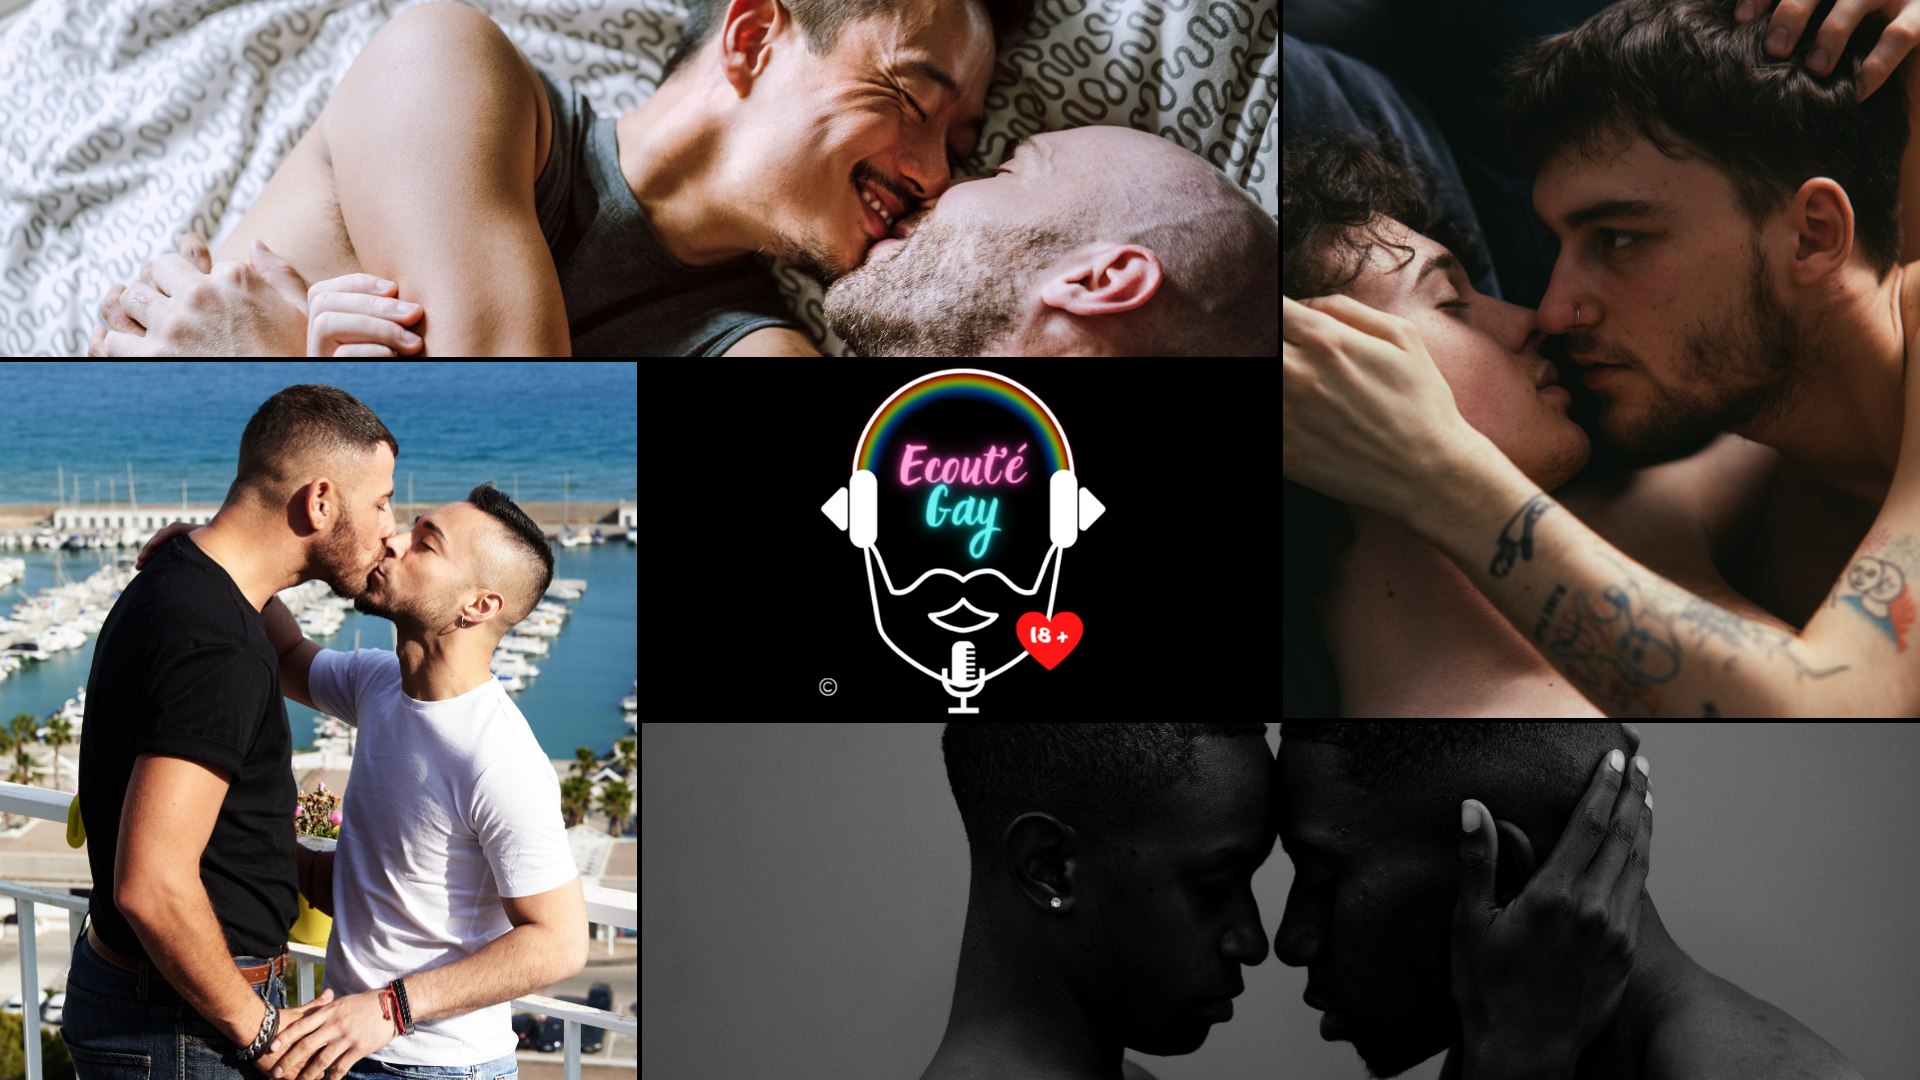 Fond d'écran exclusif "Les couples amoureux" podcast (1920x1080 pixels)